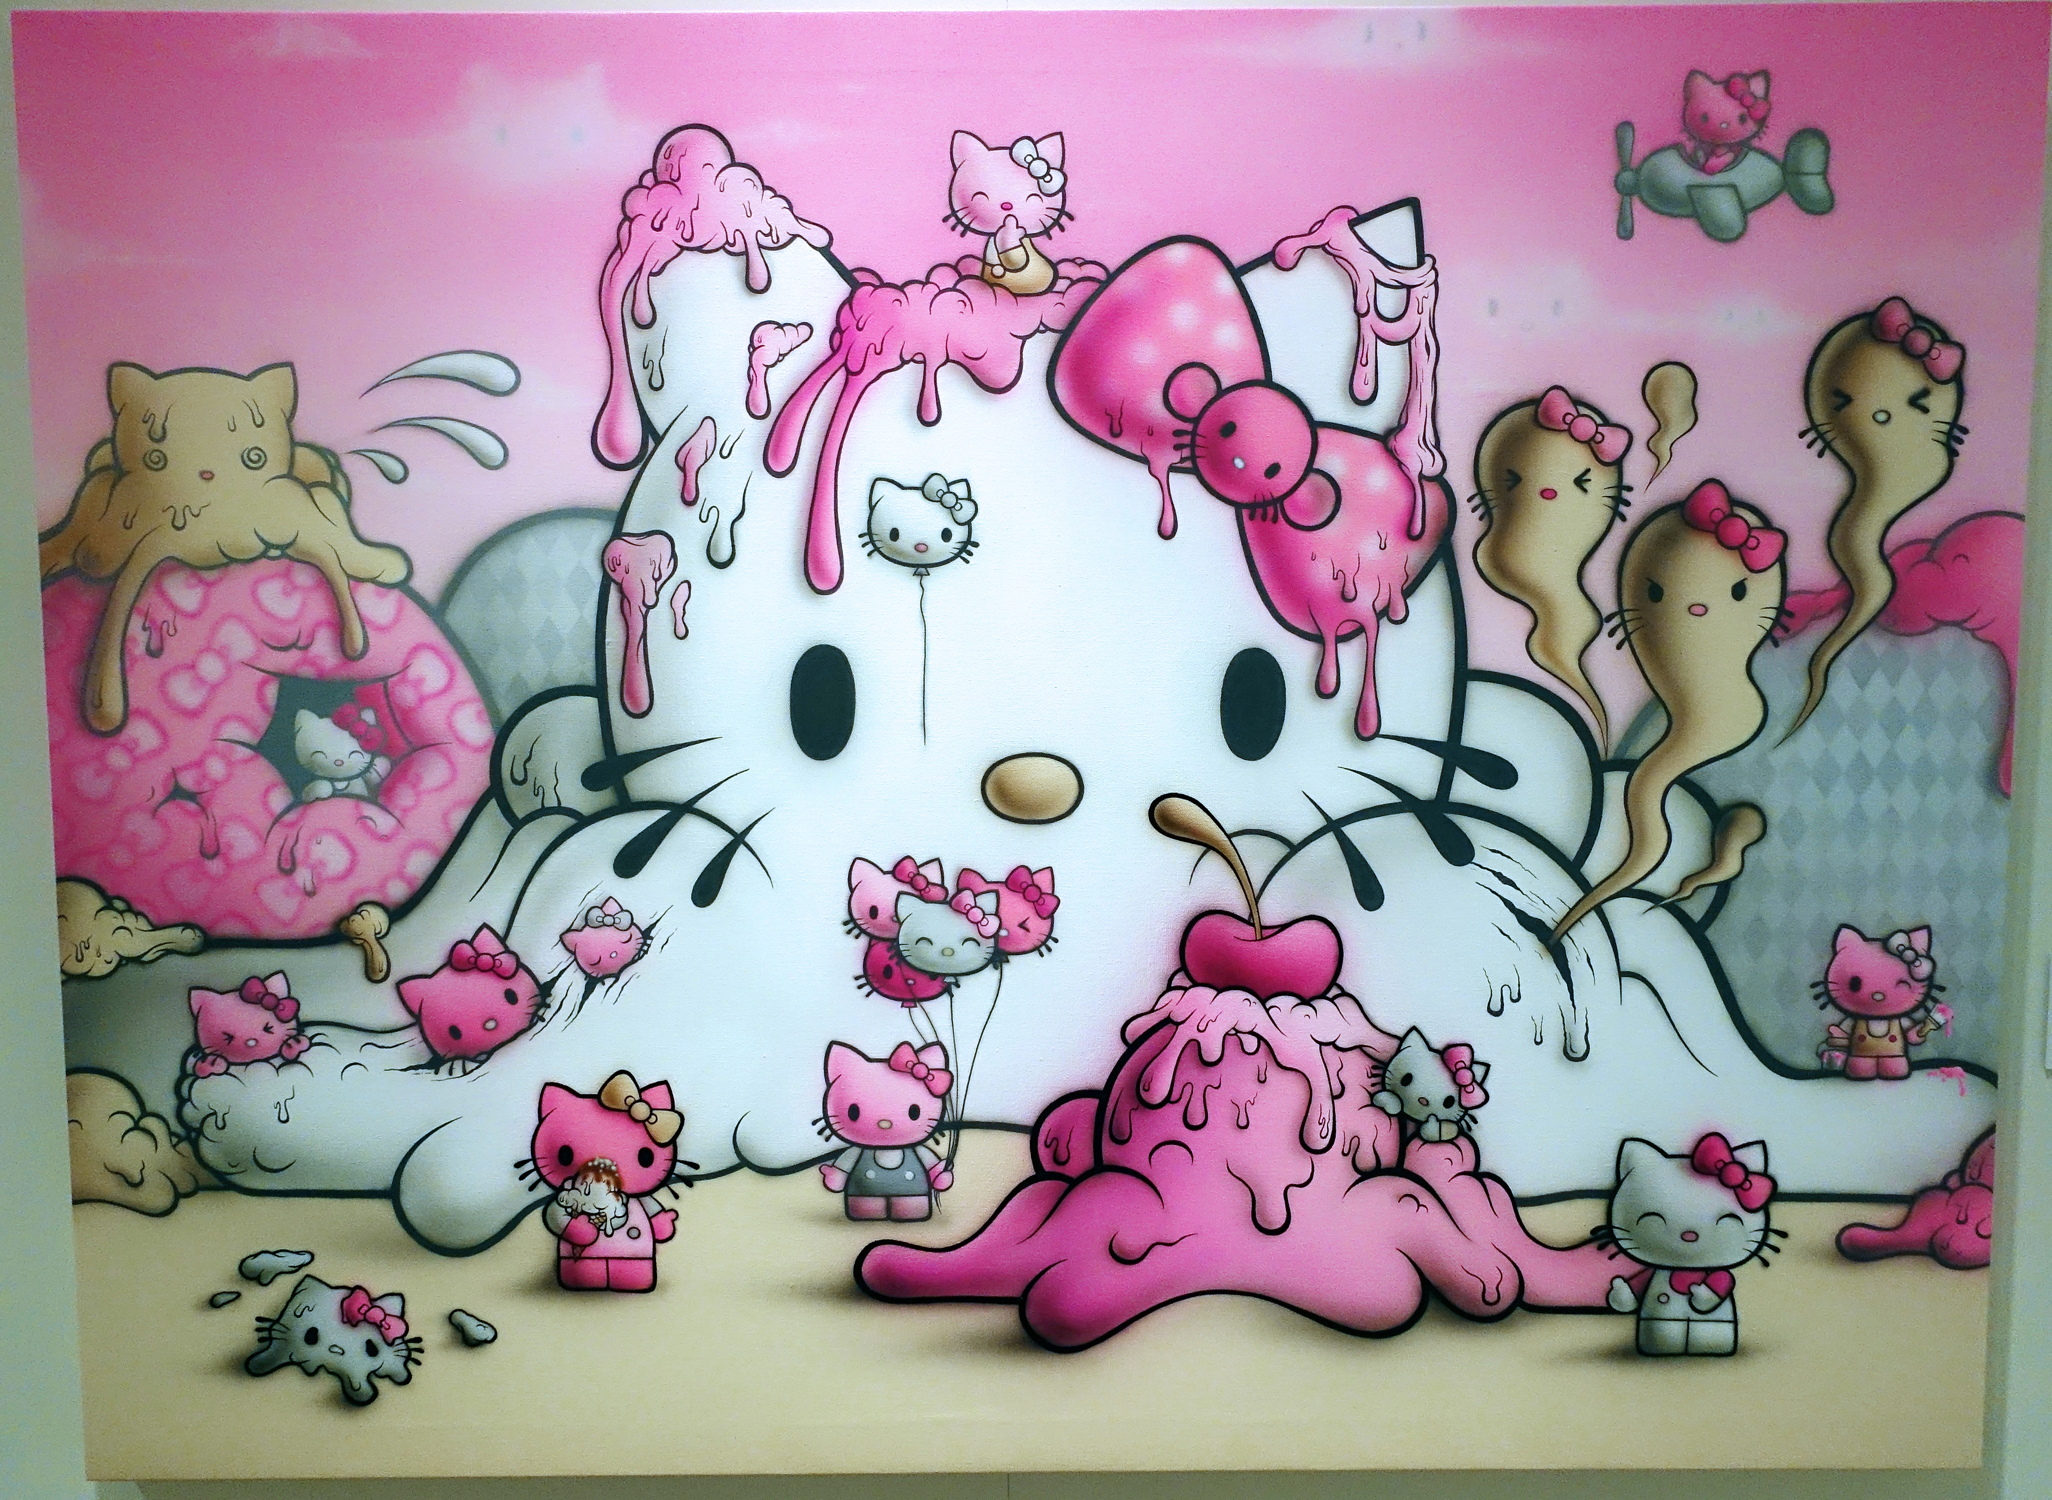 Supercute World of Hello Kitty - awa Travels